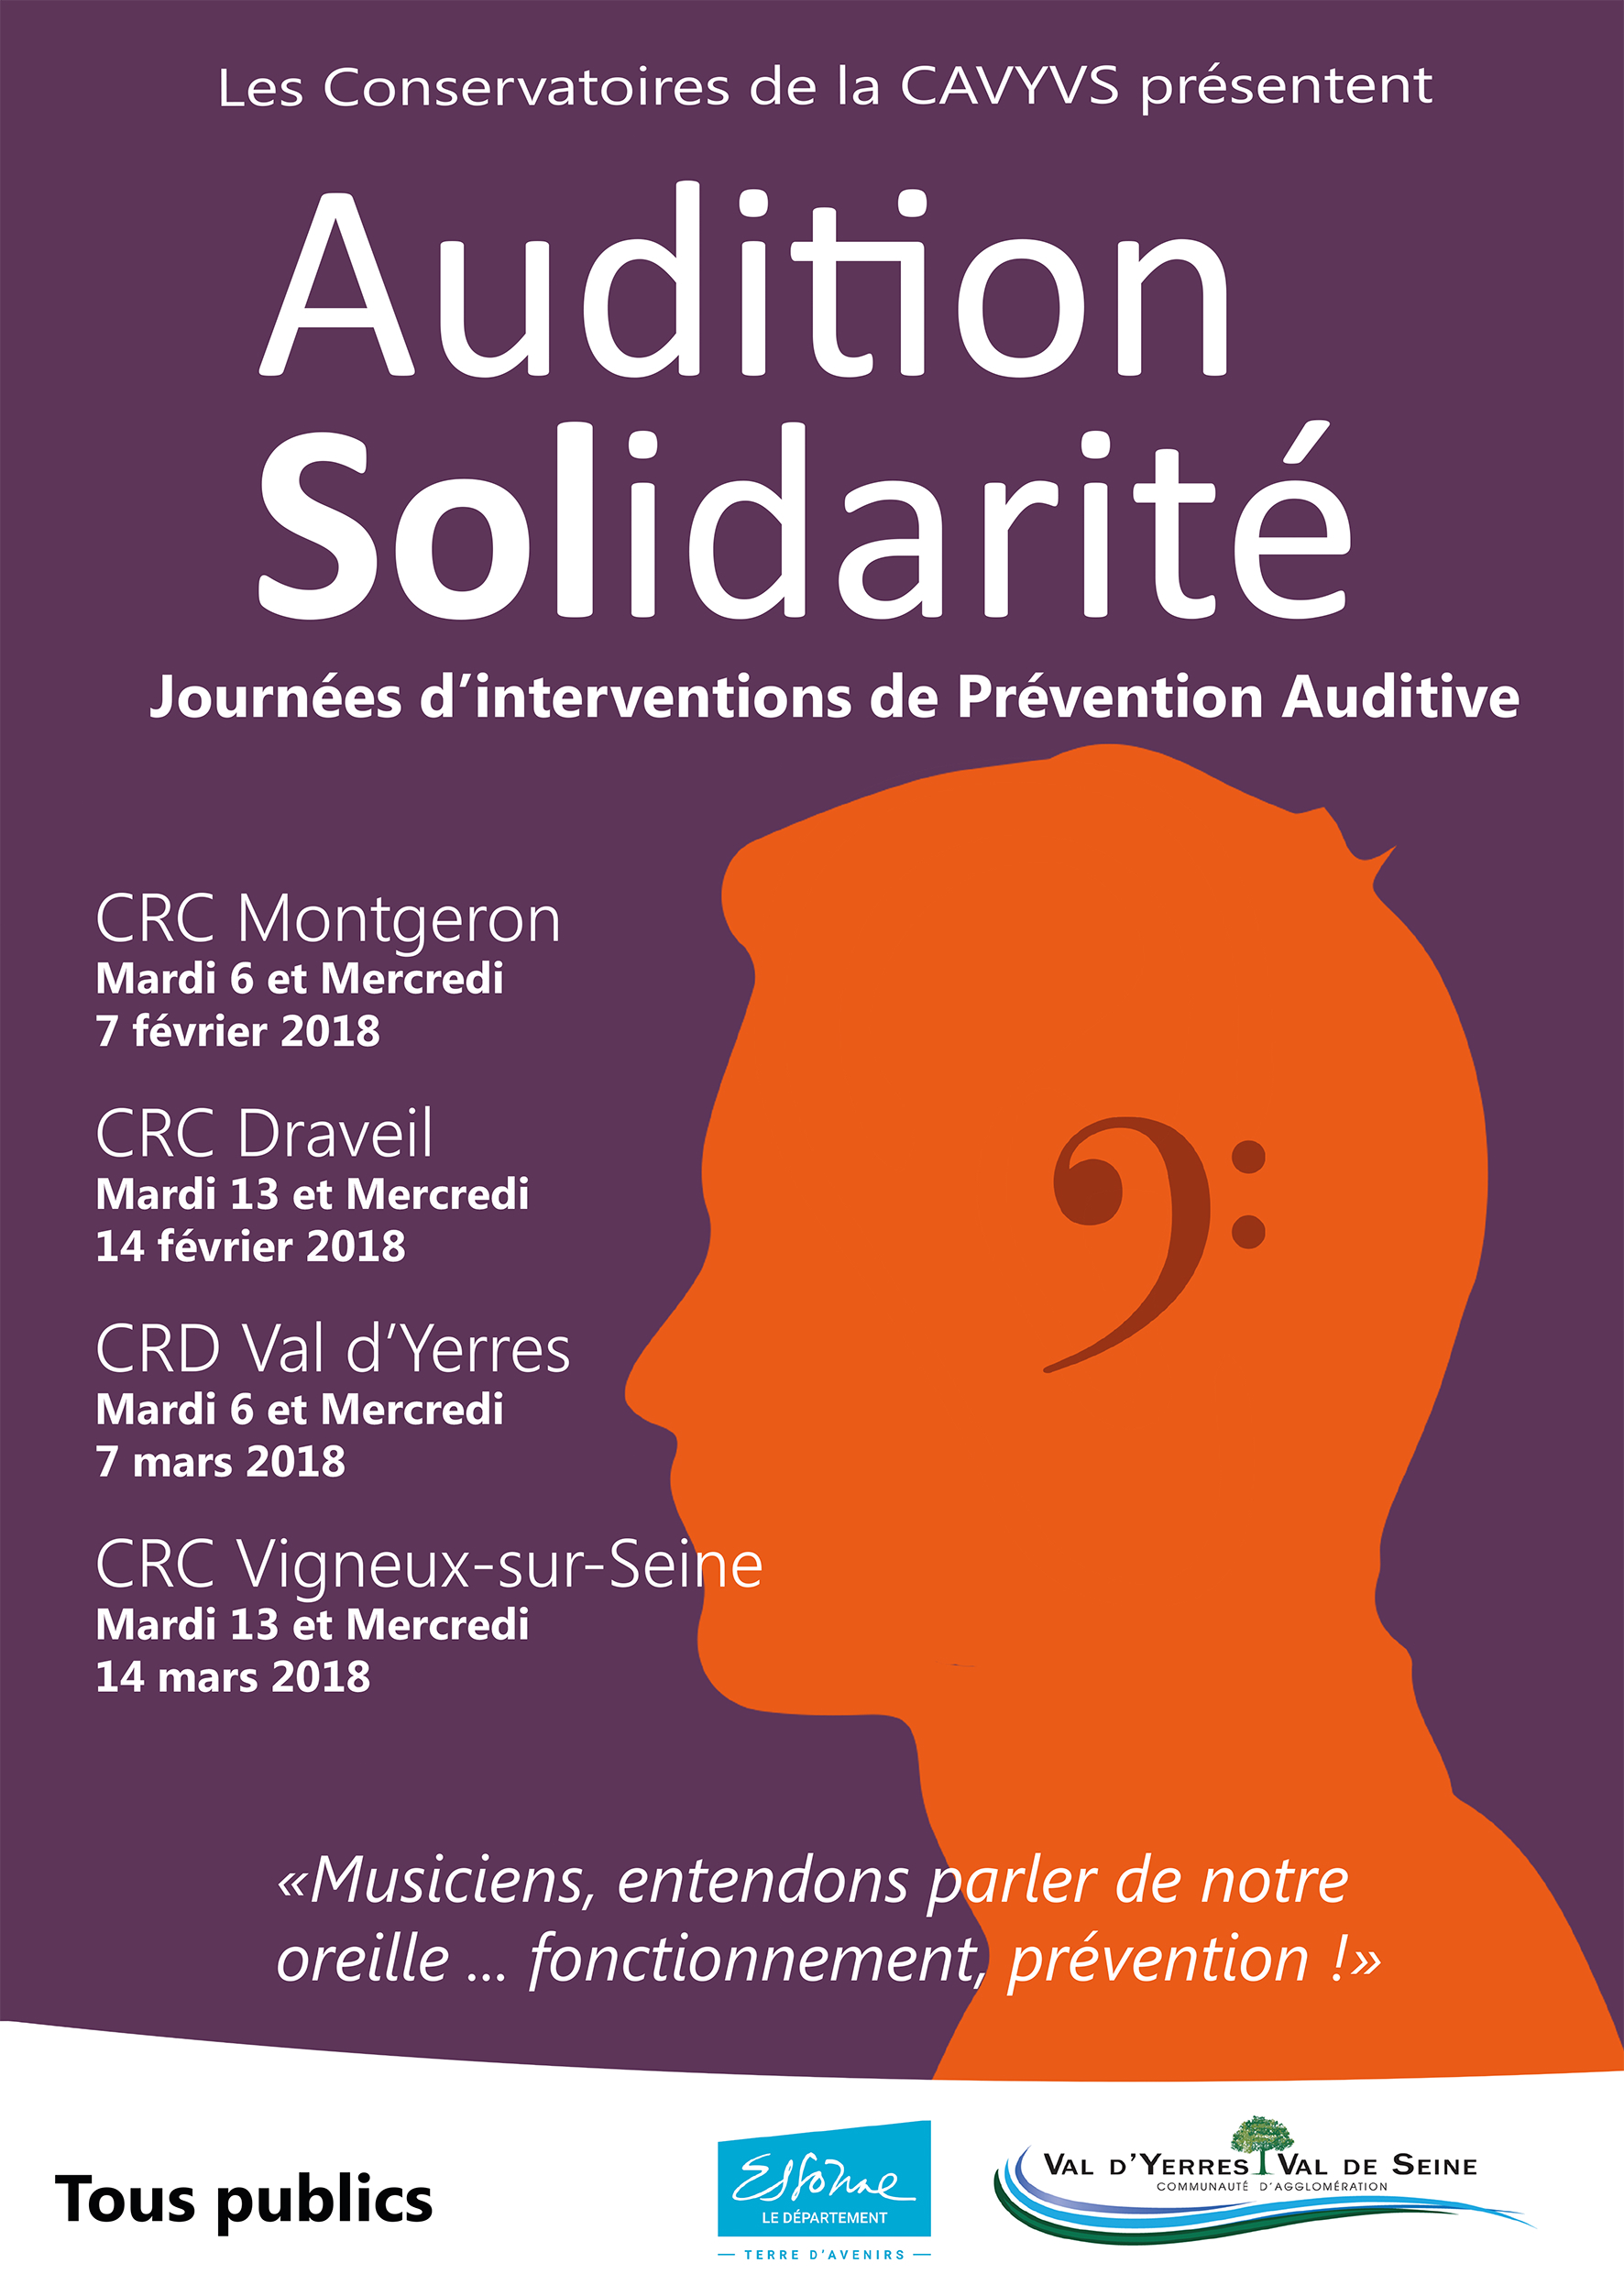 Journées de prévention auditive avec « Audition Solidarité » dans les conservatoires : du 7 février au 21 mars